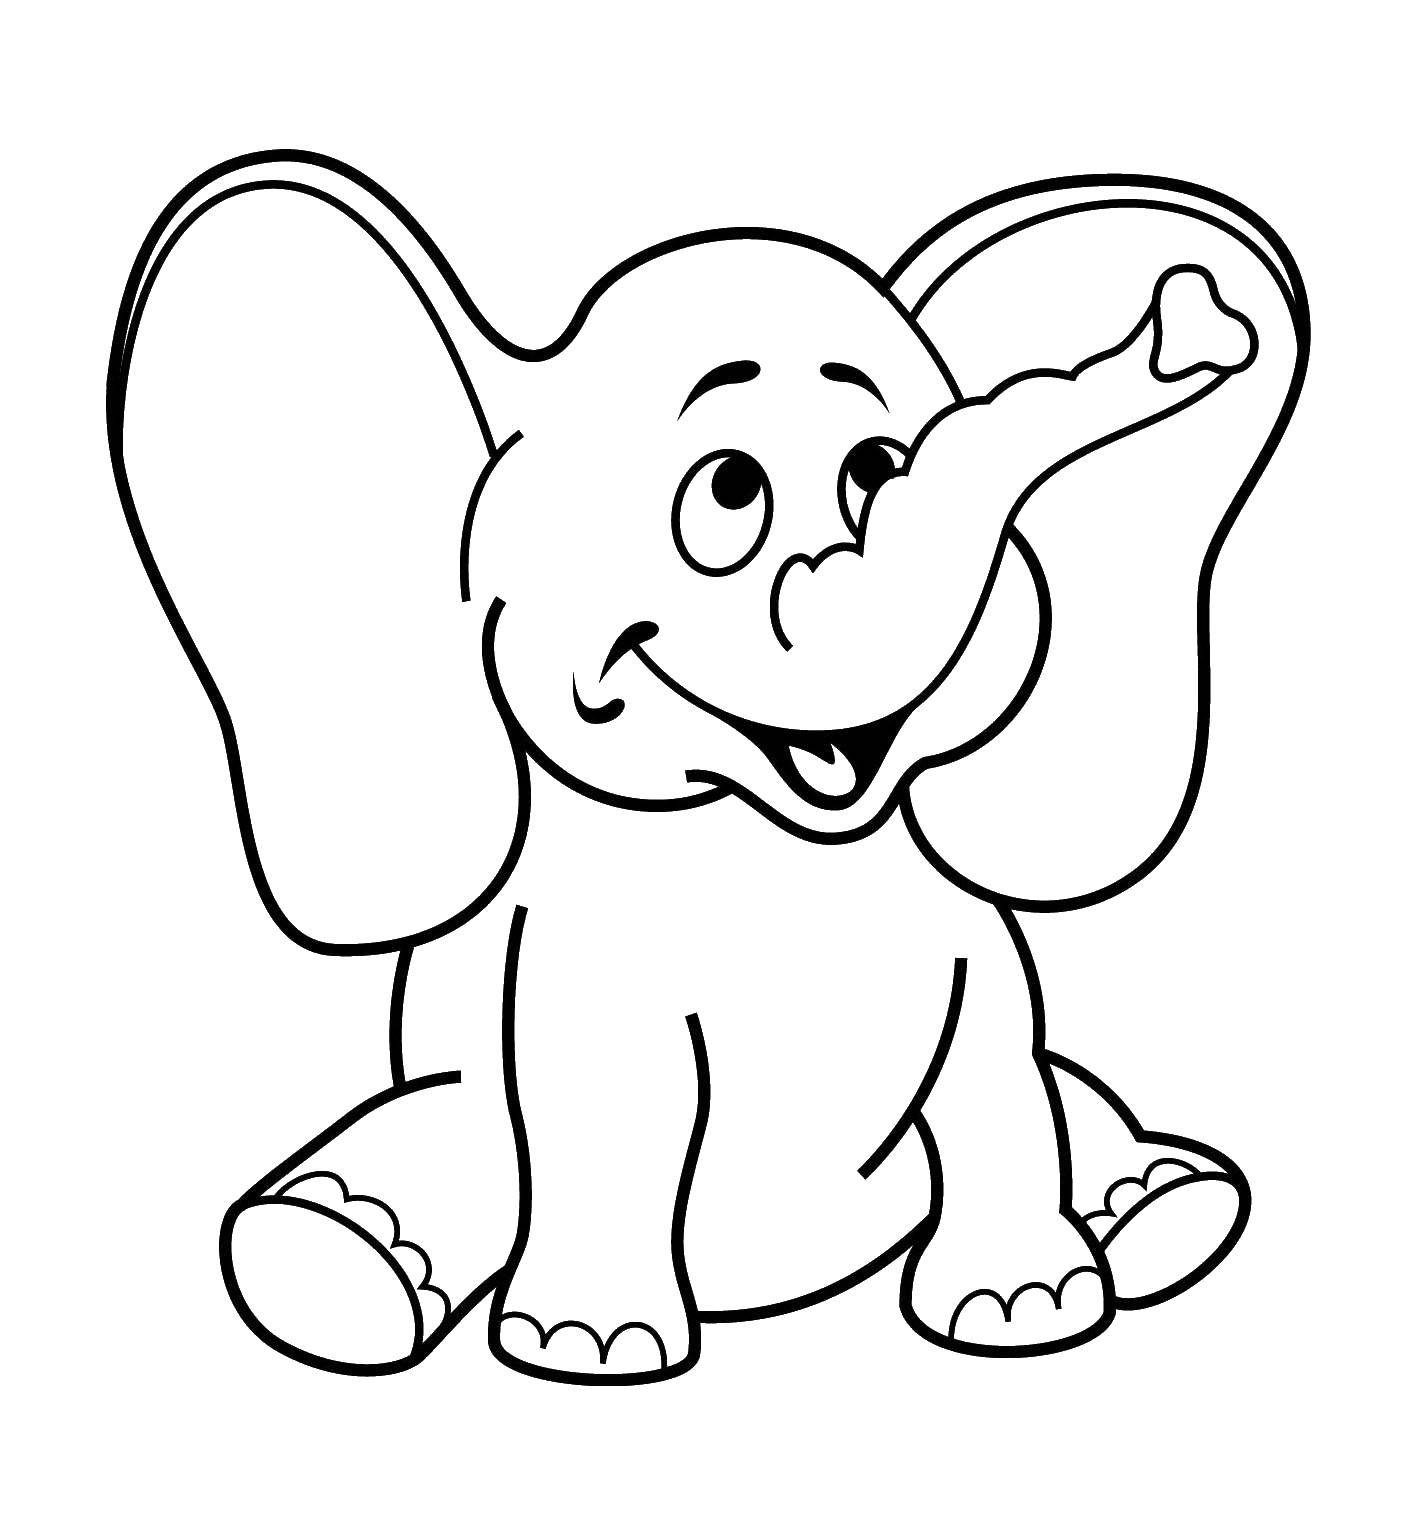 Название: Раскраска Слон. Категория: Раскраски для малышей. Теги: Слон.